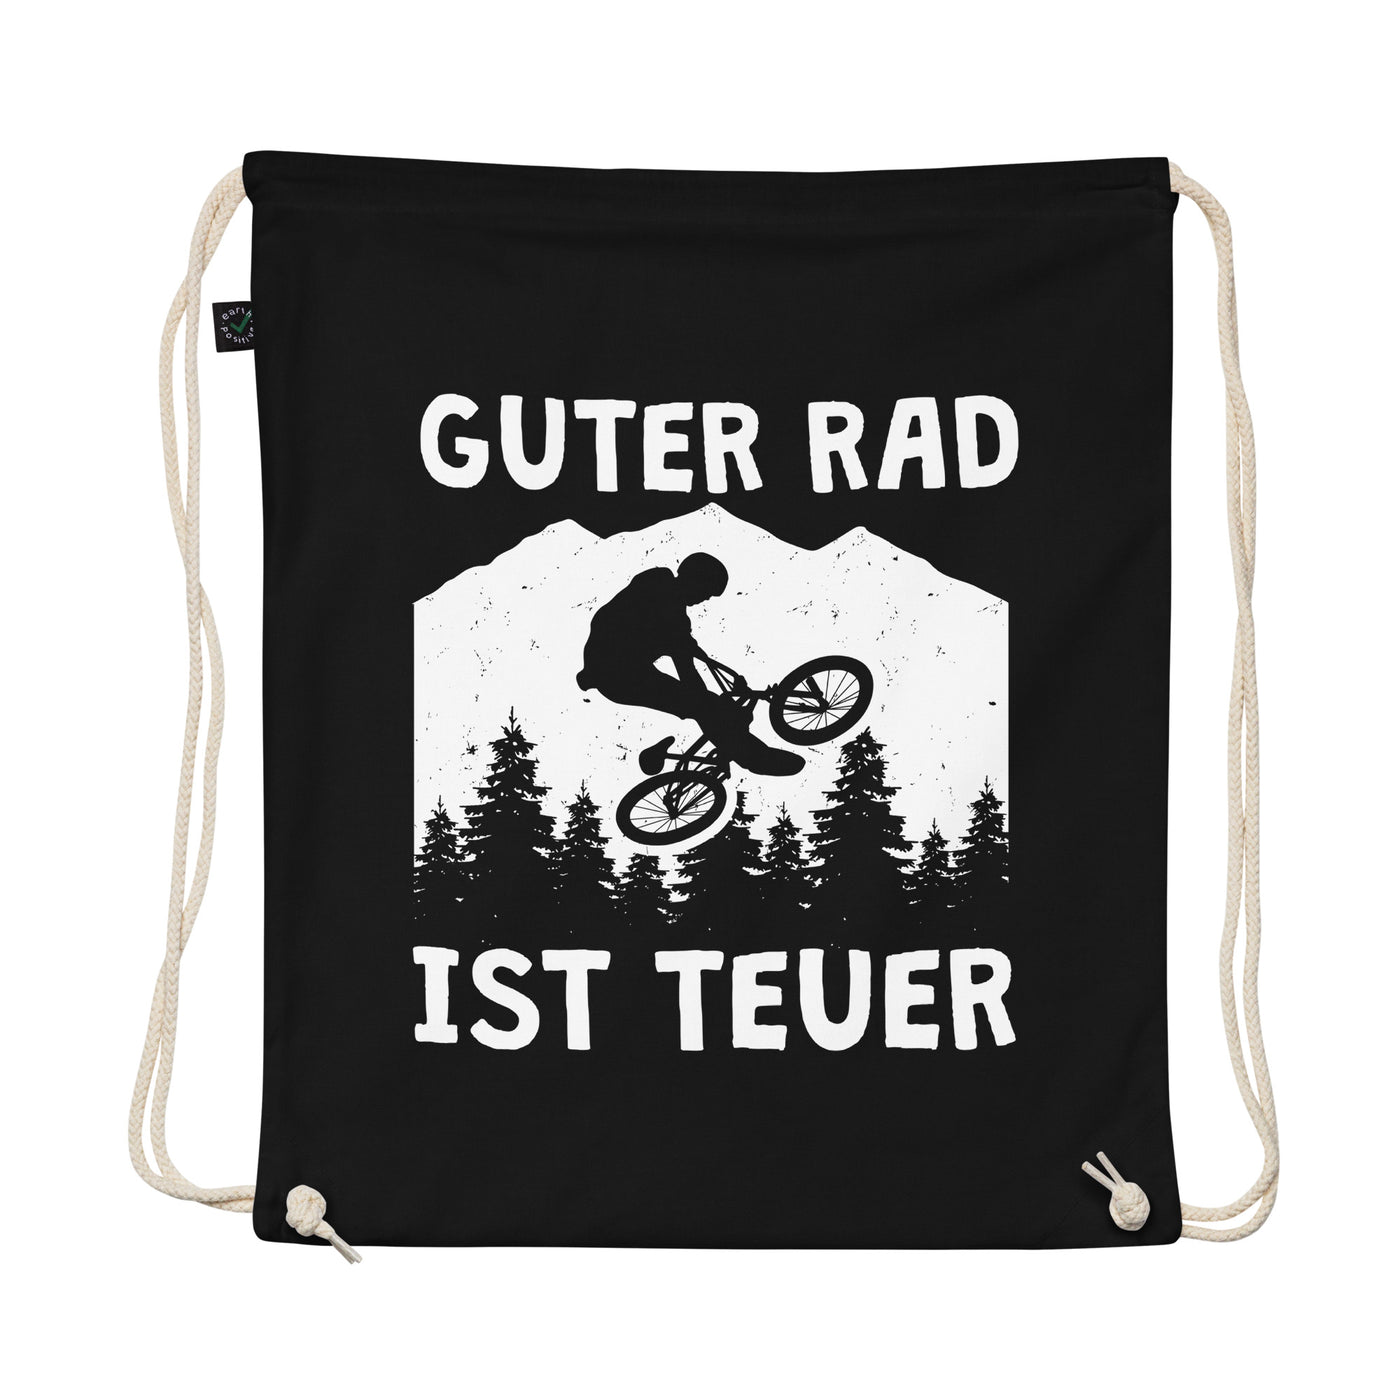 Guter Rad Ist Teuer. - Organic Turnbeutel fahrrad mountainbike Schwarz